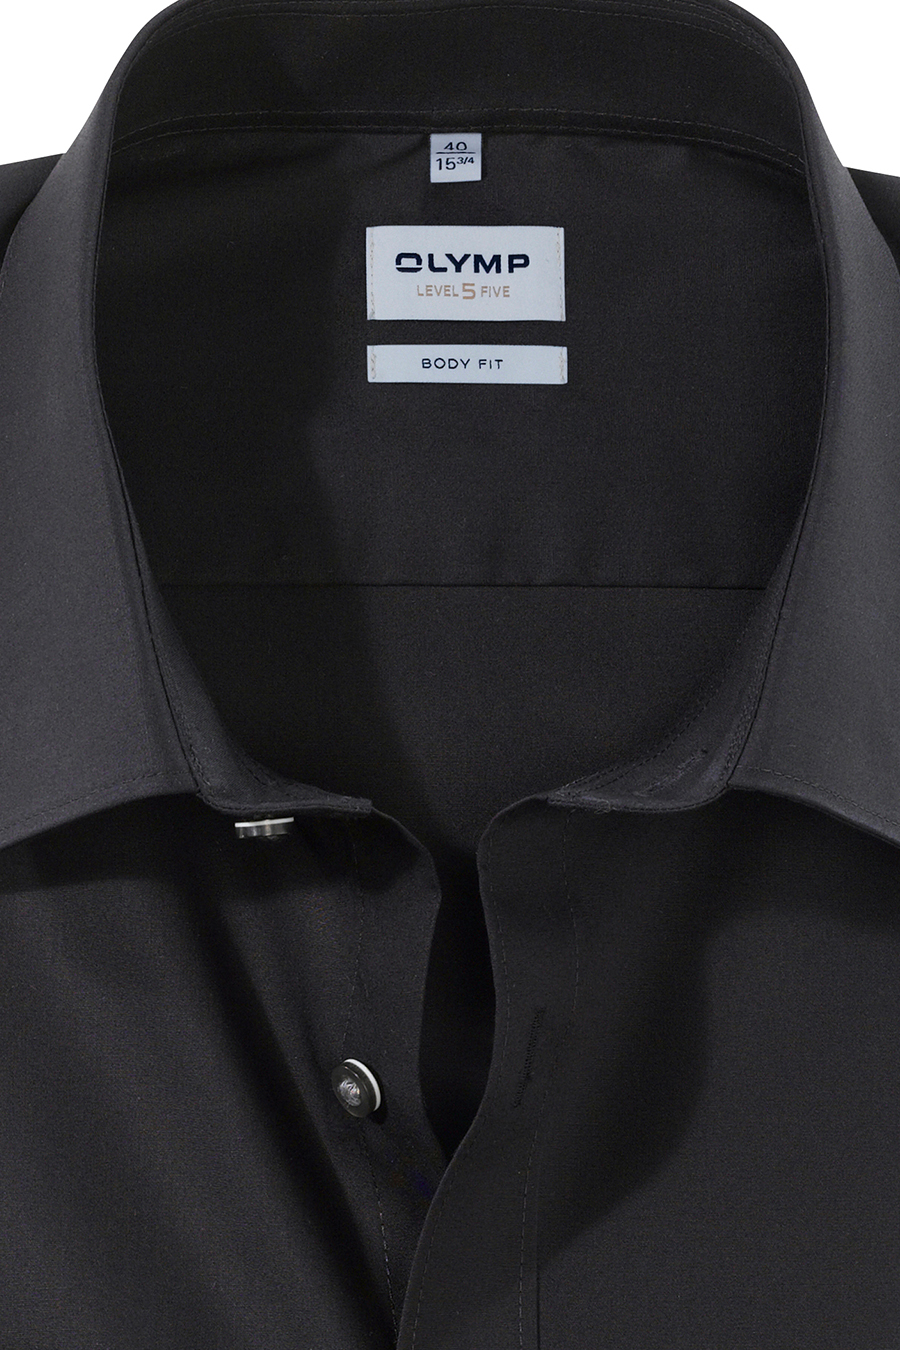 Stretch schwarz OLYMP Langarm Five fit Level Hemd body